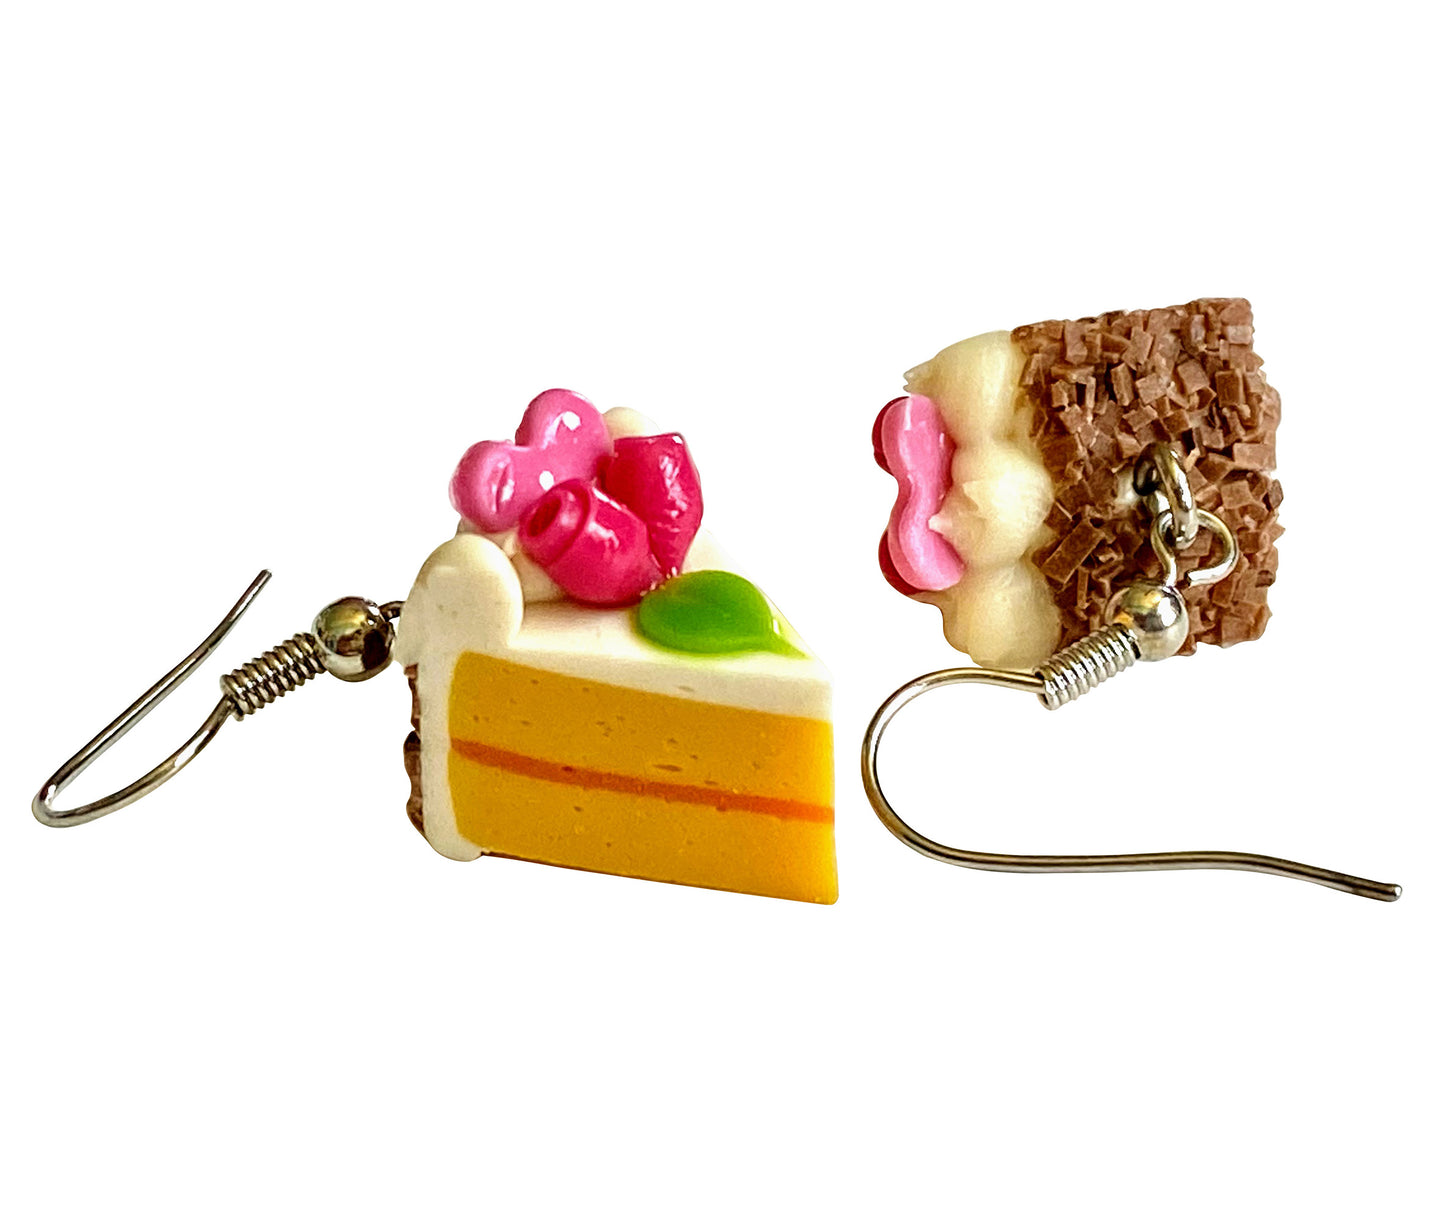 Handmade miniature food model earrings for Girls Teen - Slice Cake Heart 2 Roses